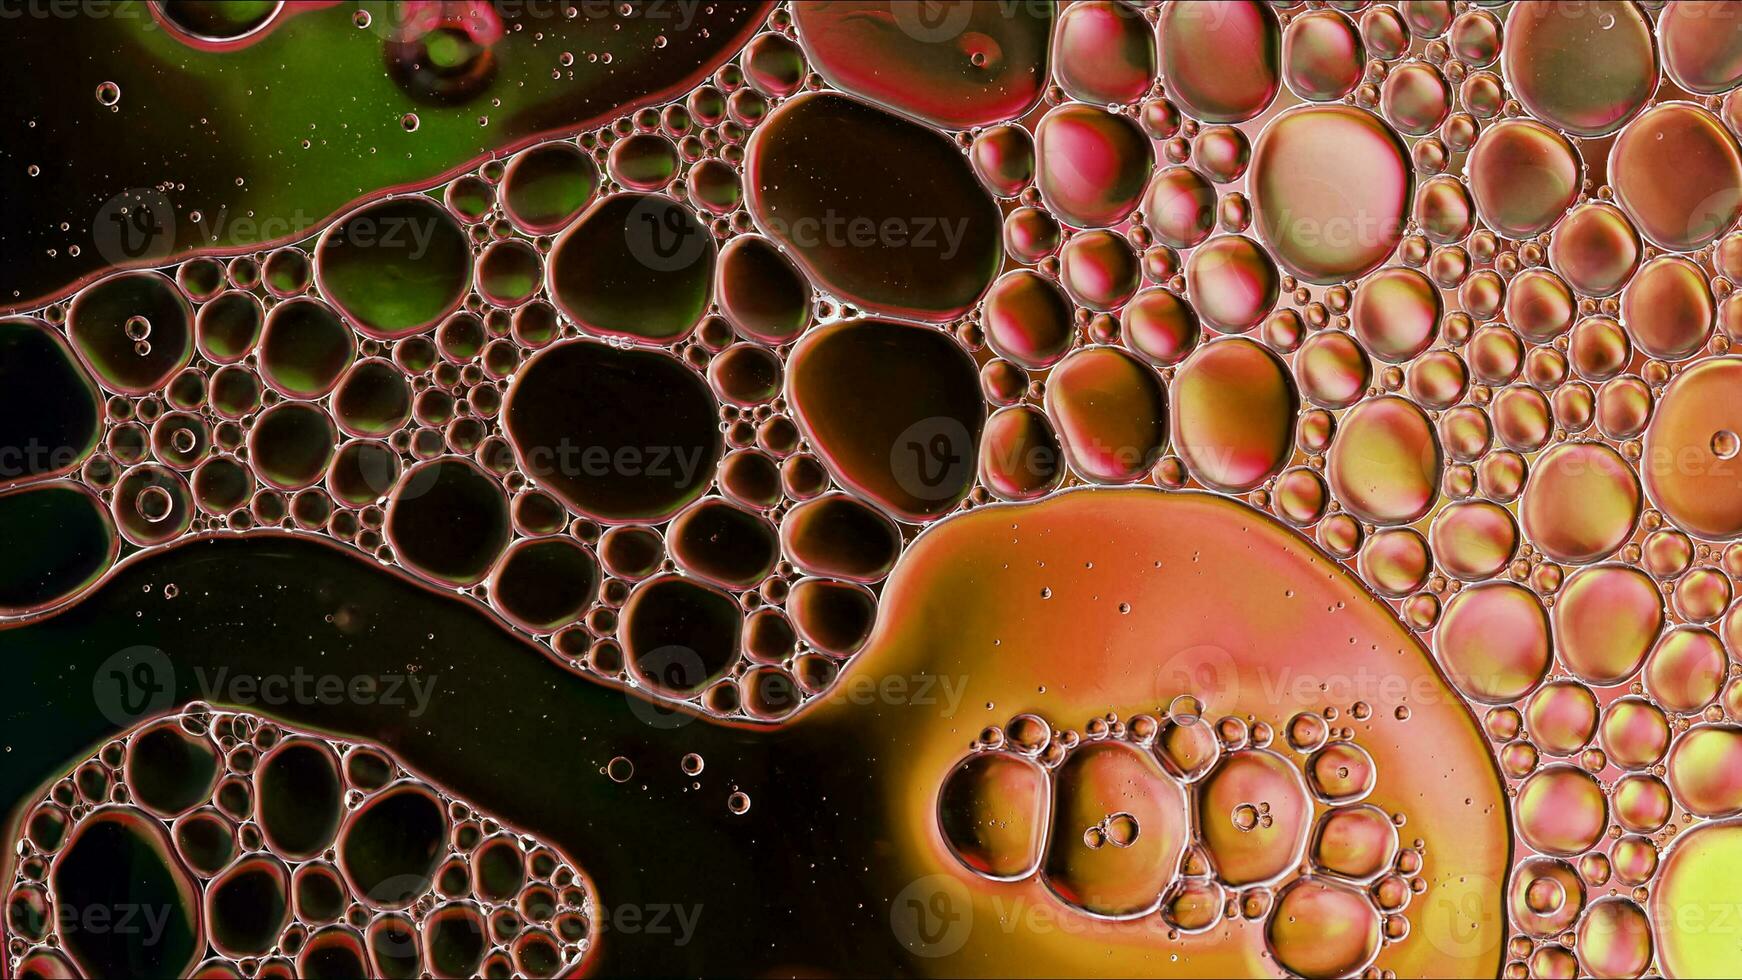 óleo de comida colorida abstrata gotas de bolhas e esferas fluindo na superfície da água foto